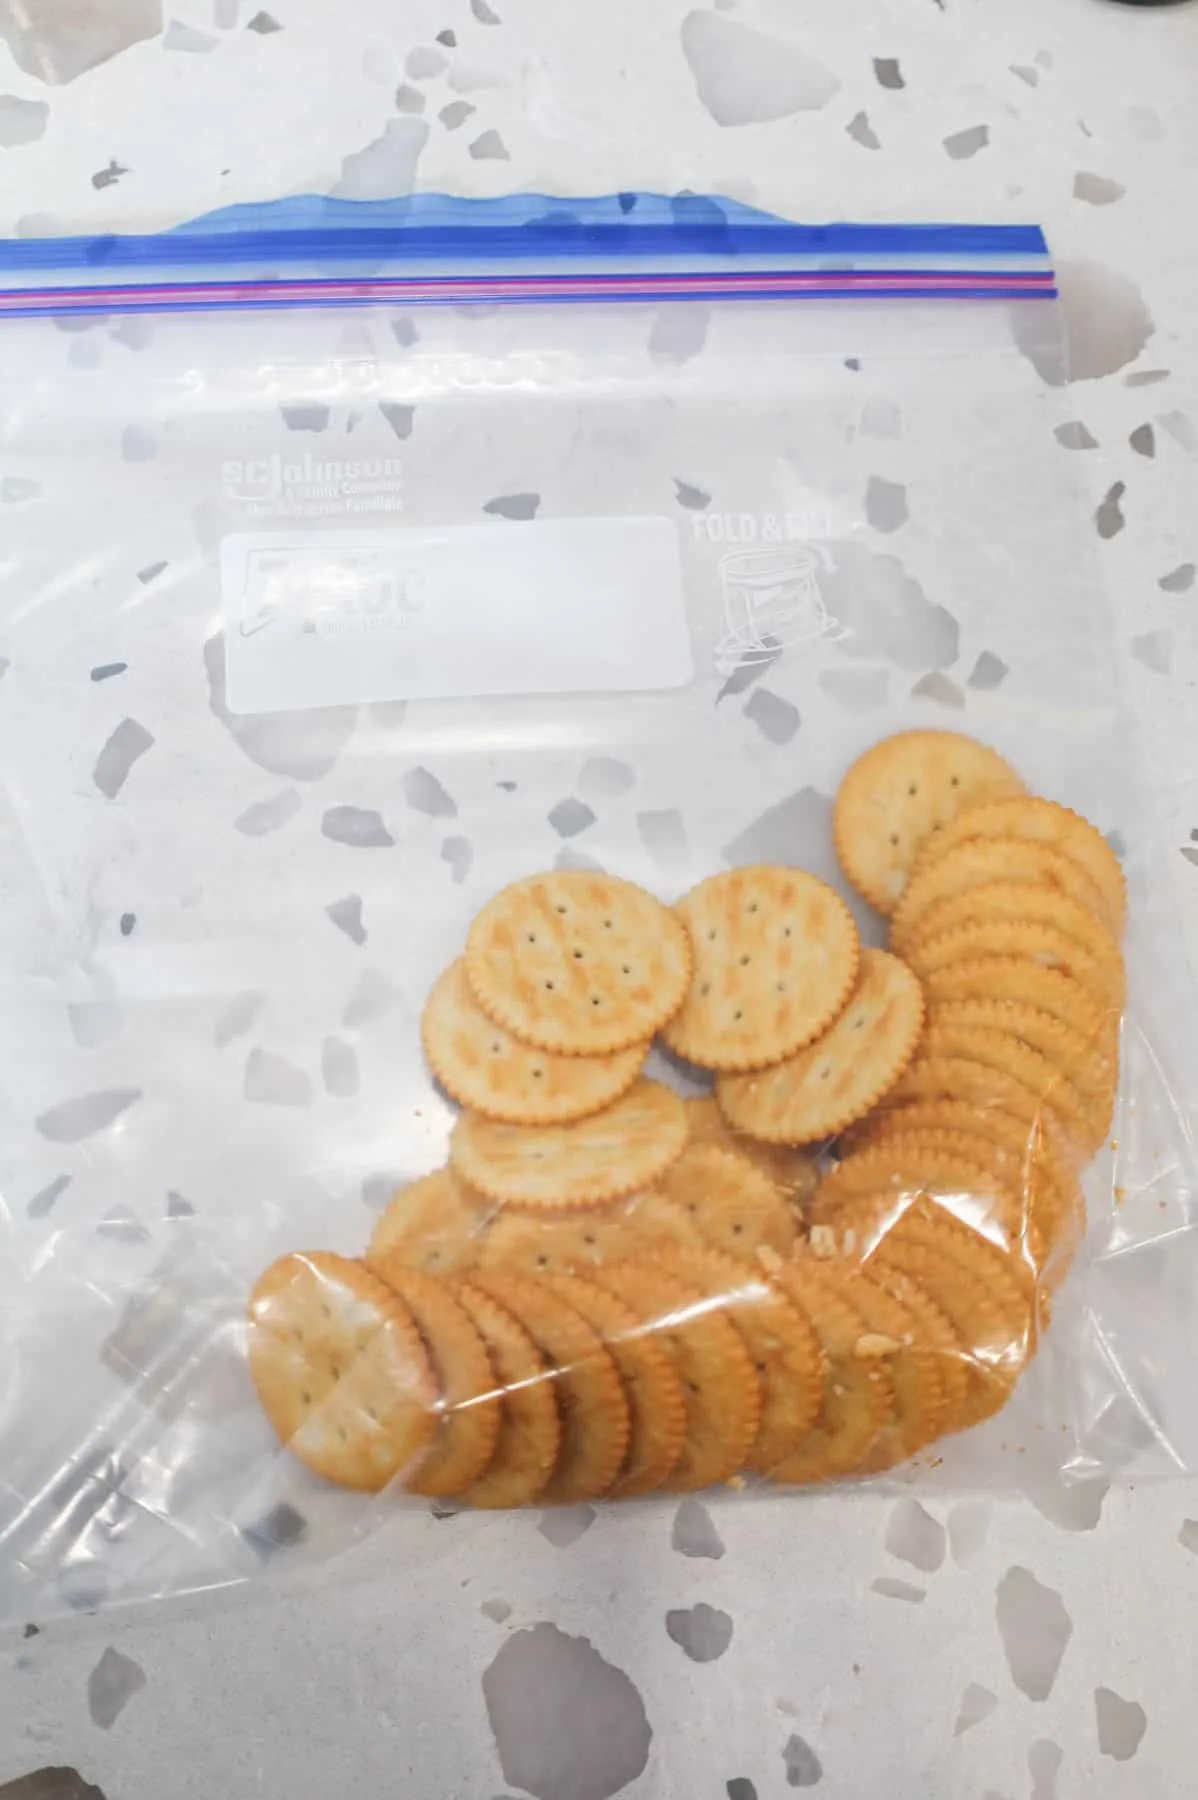 Ritz crackers in a Ziploc bag